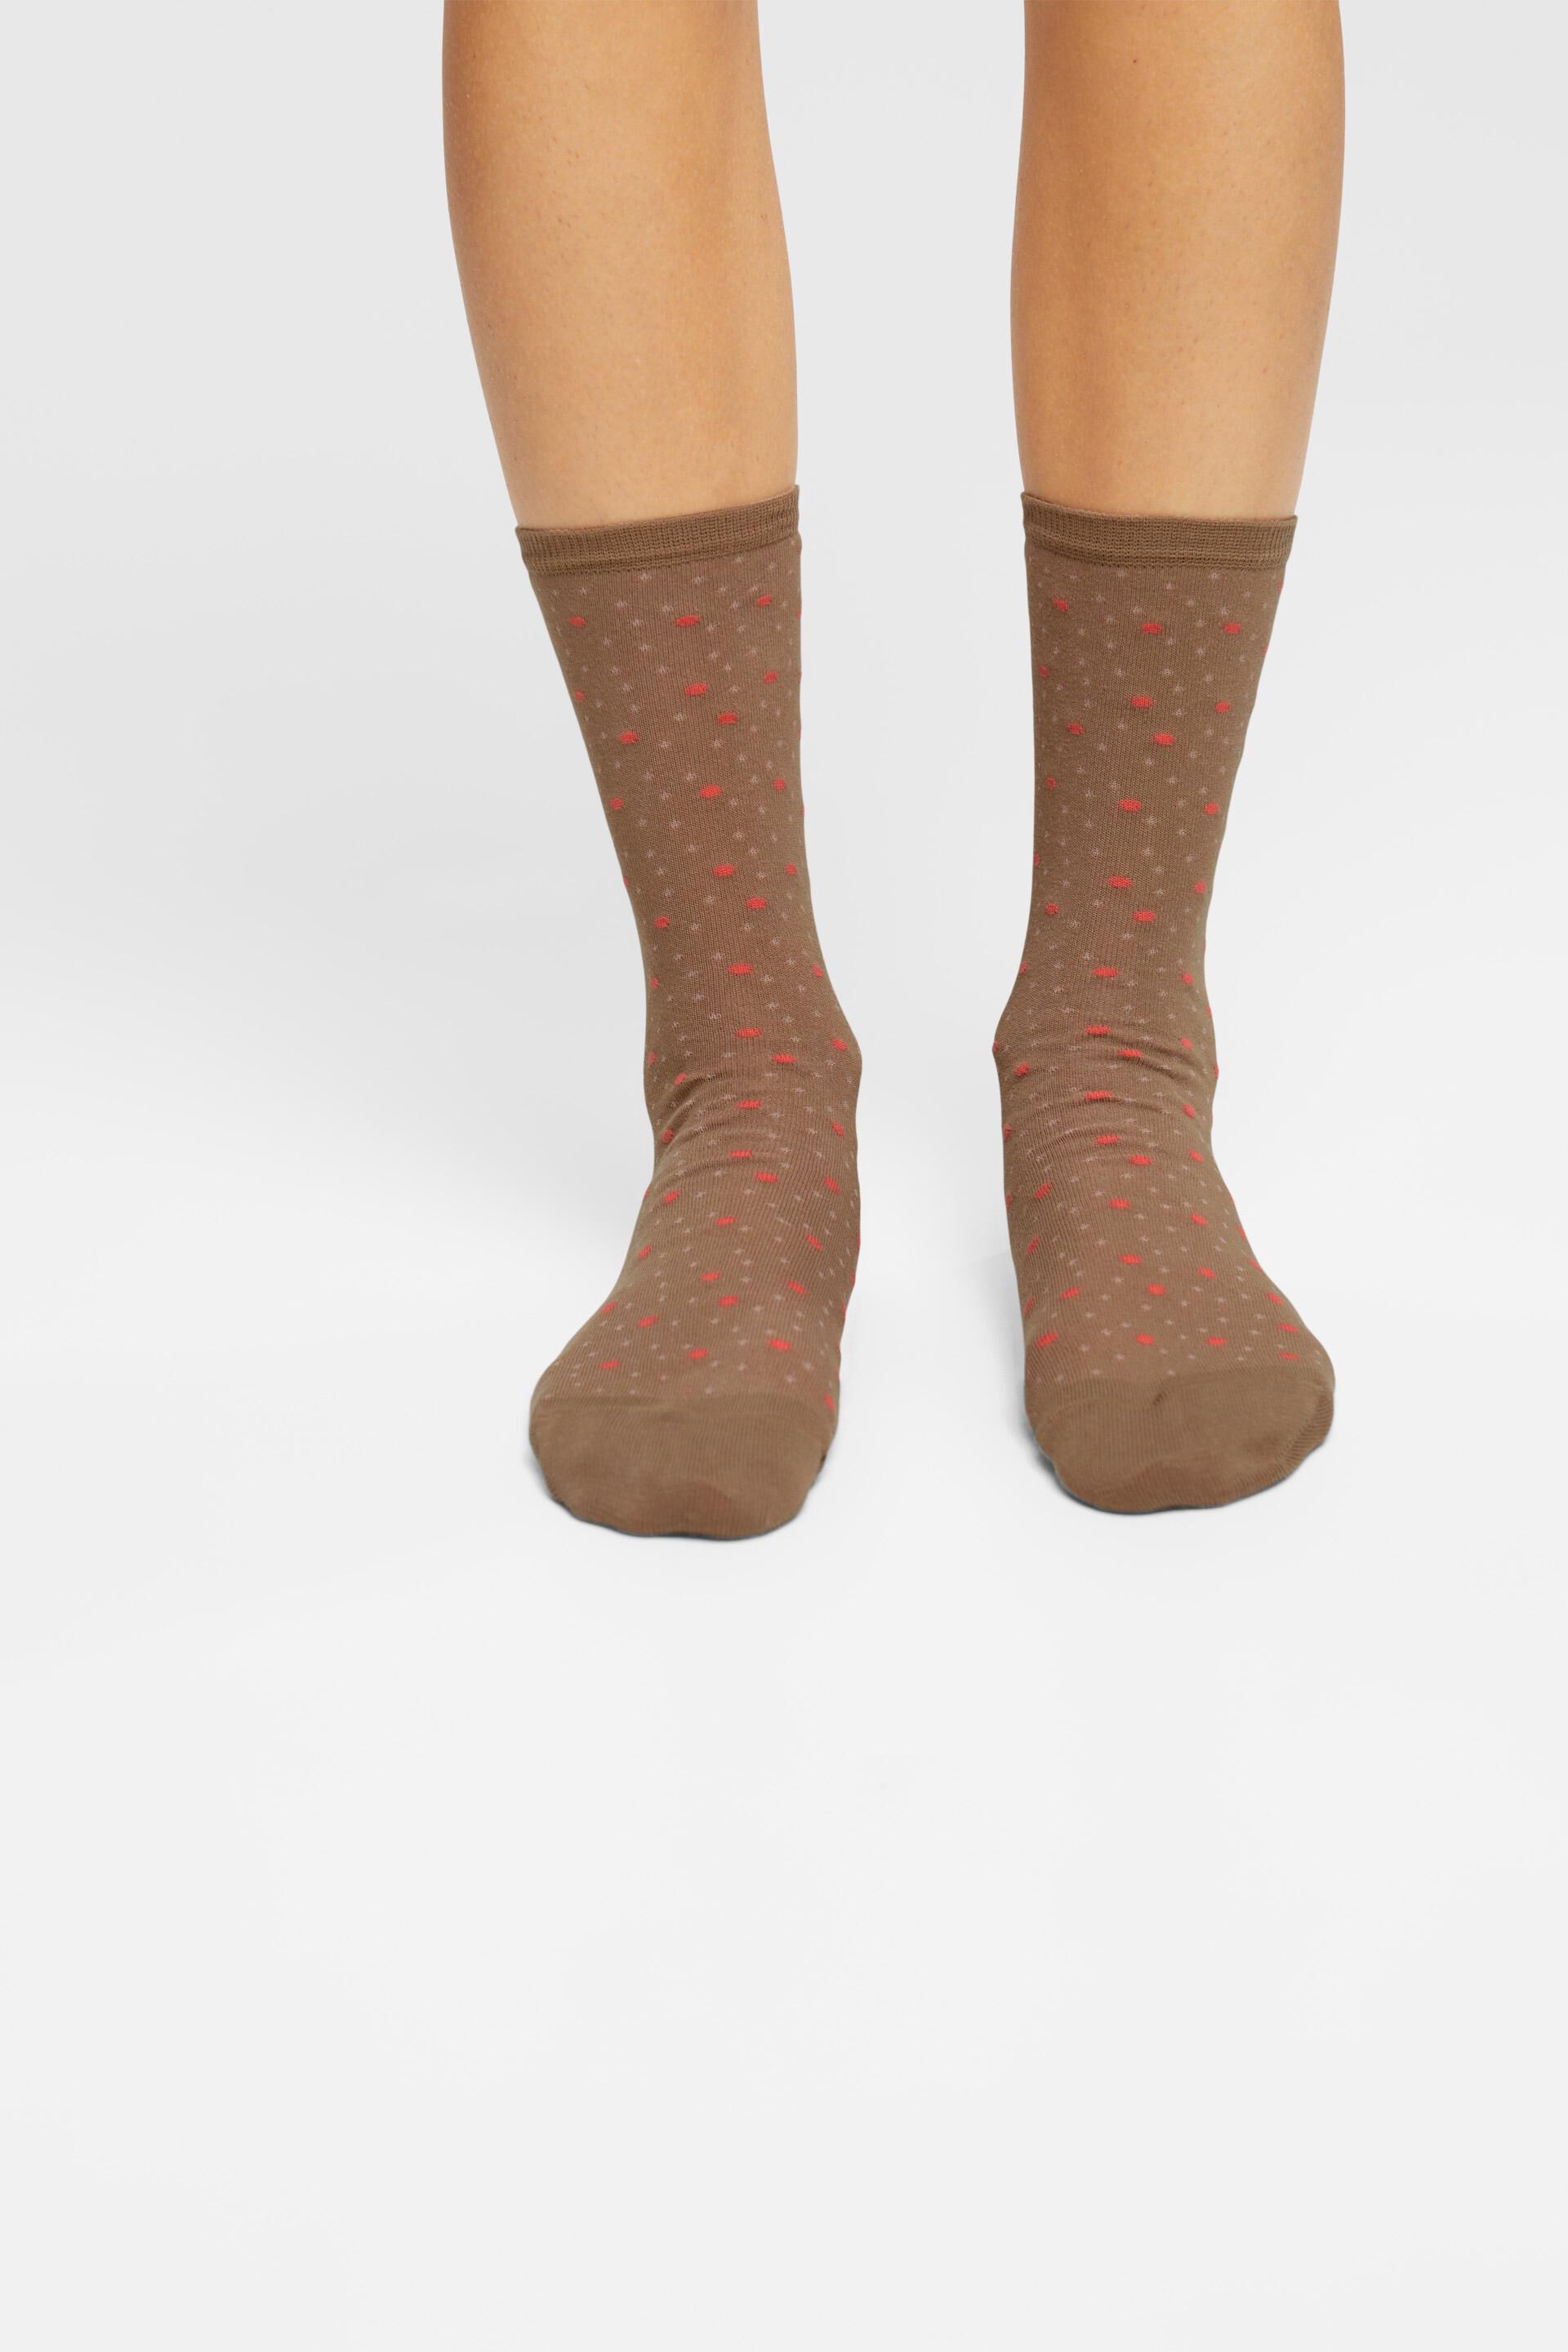 Esprit 2er-Pack Bio-Baumwolle aus Socken